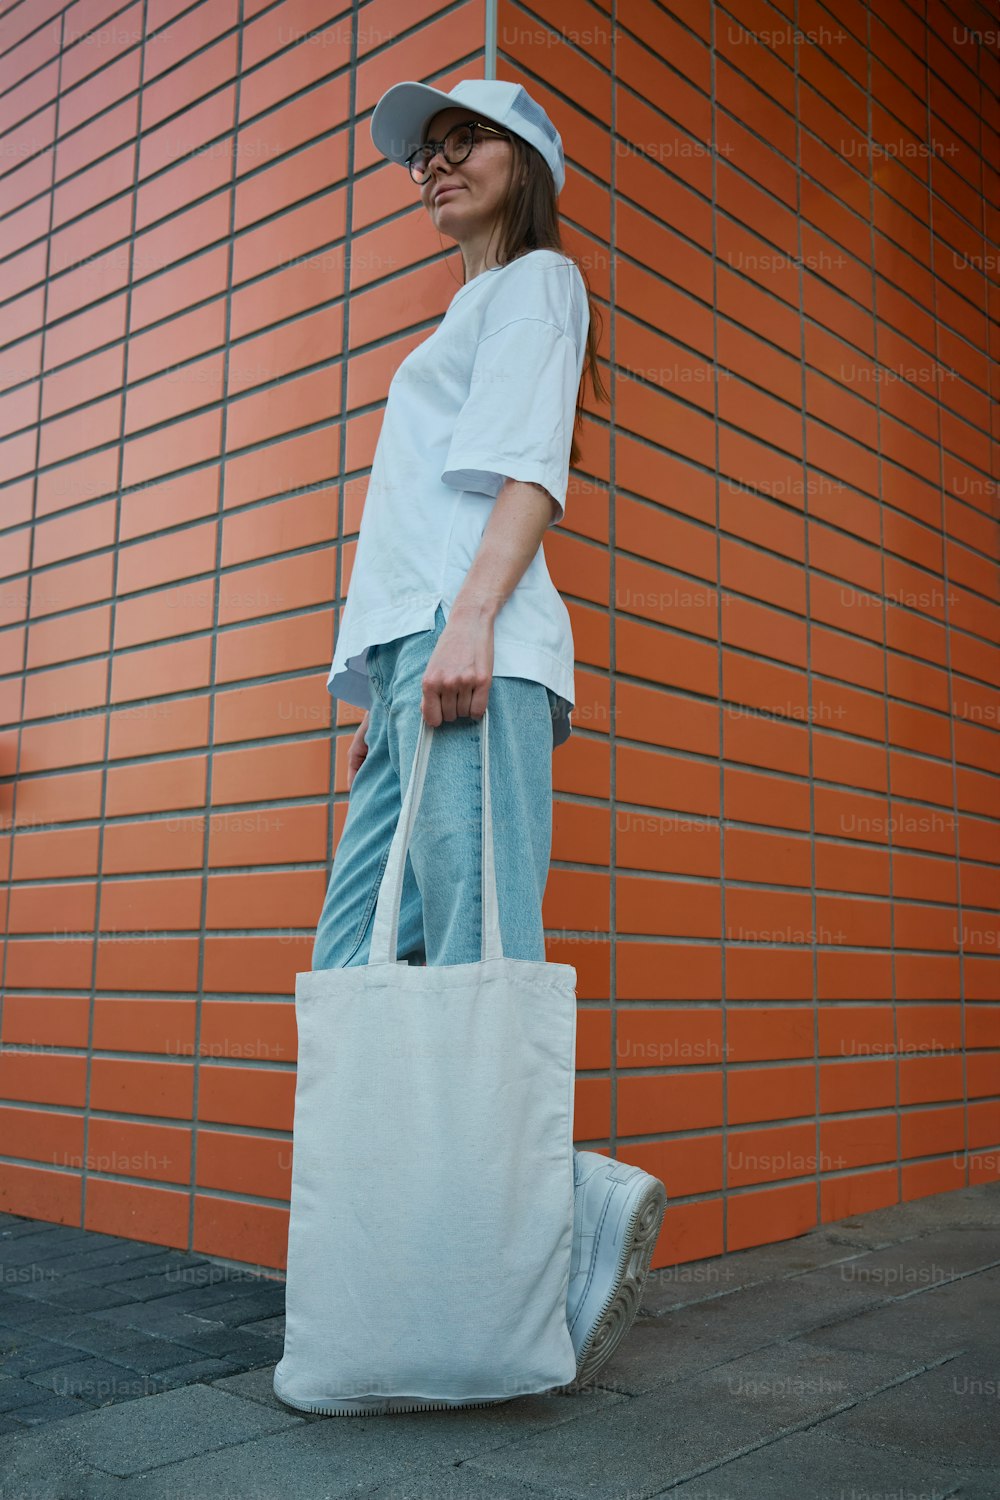 벽돌 벽 앞에 서 있는 하얀 가방을 들고 있는 여자